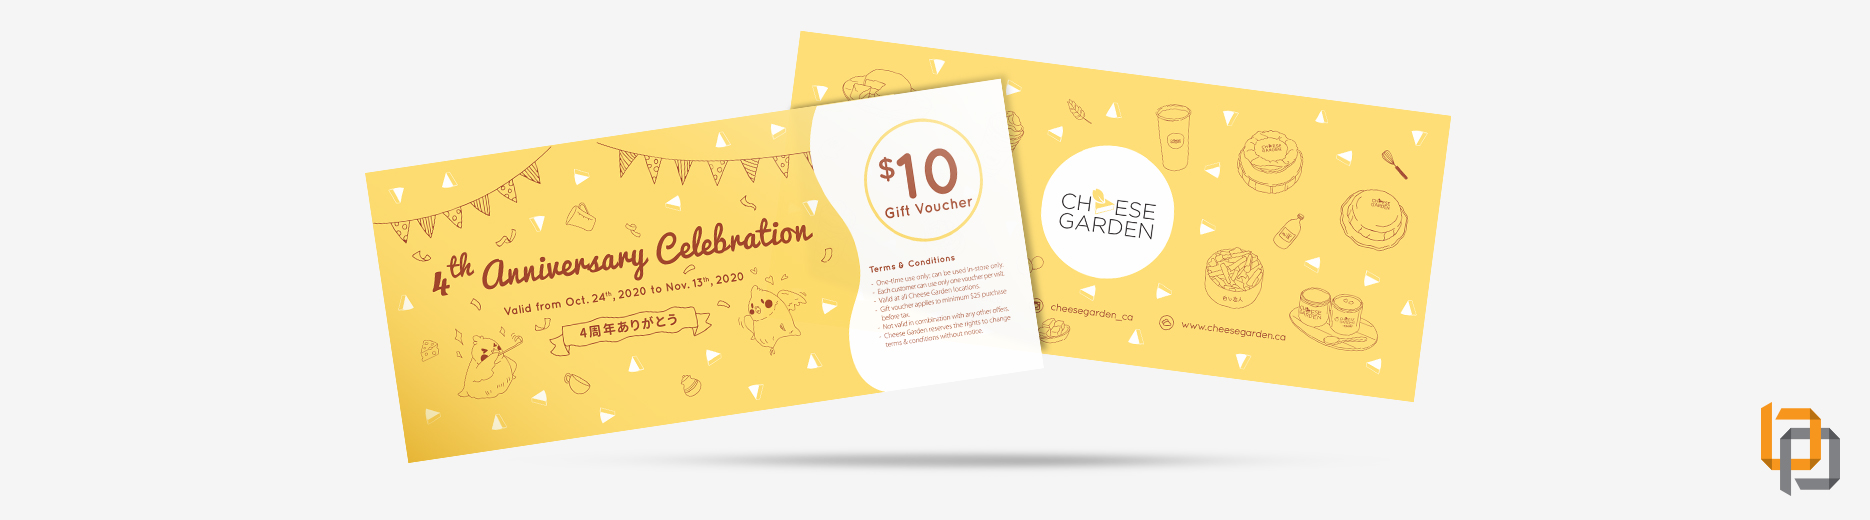 Cheese Garden Graphic Design